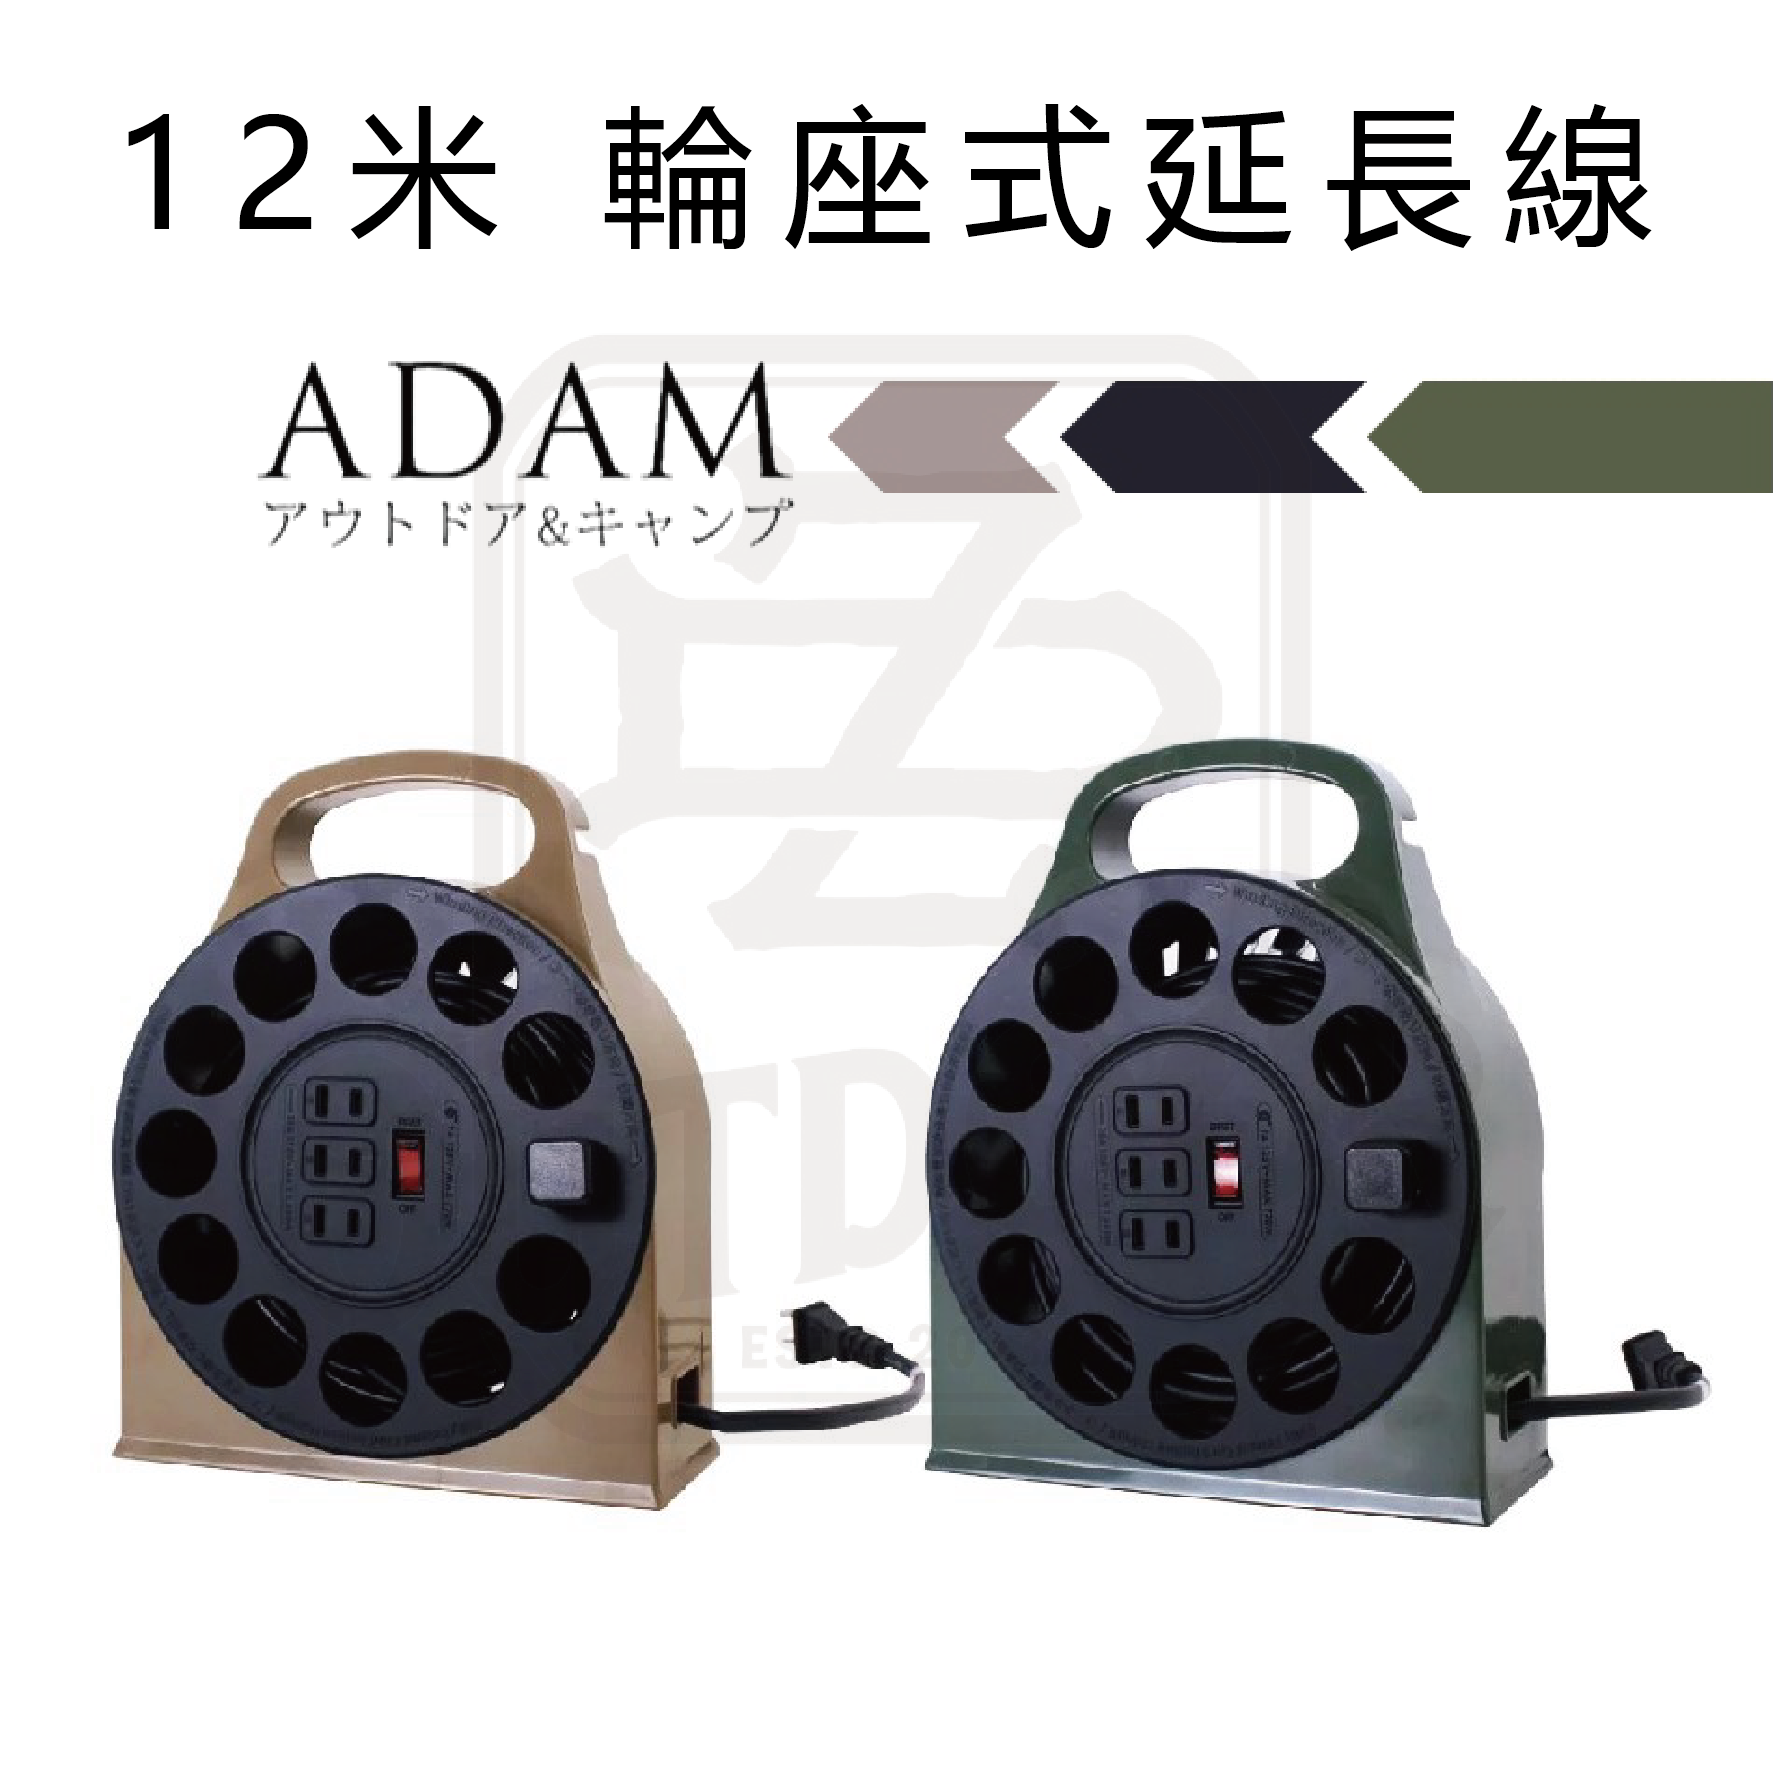 ADAM 12米輪座式延長線 沙色/軍綠 動力線 延長線 動力線盤 過載自動斷電 台灣製造【ZD Outdoor】